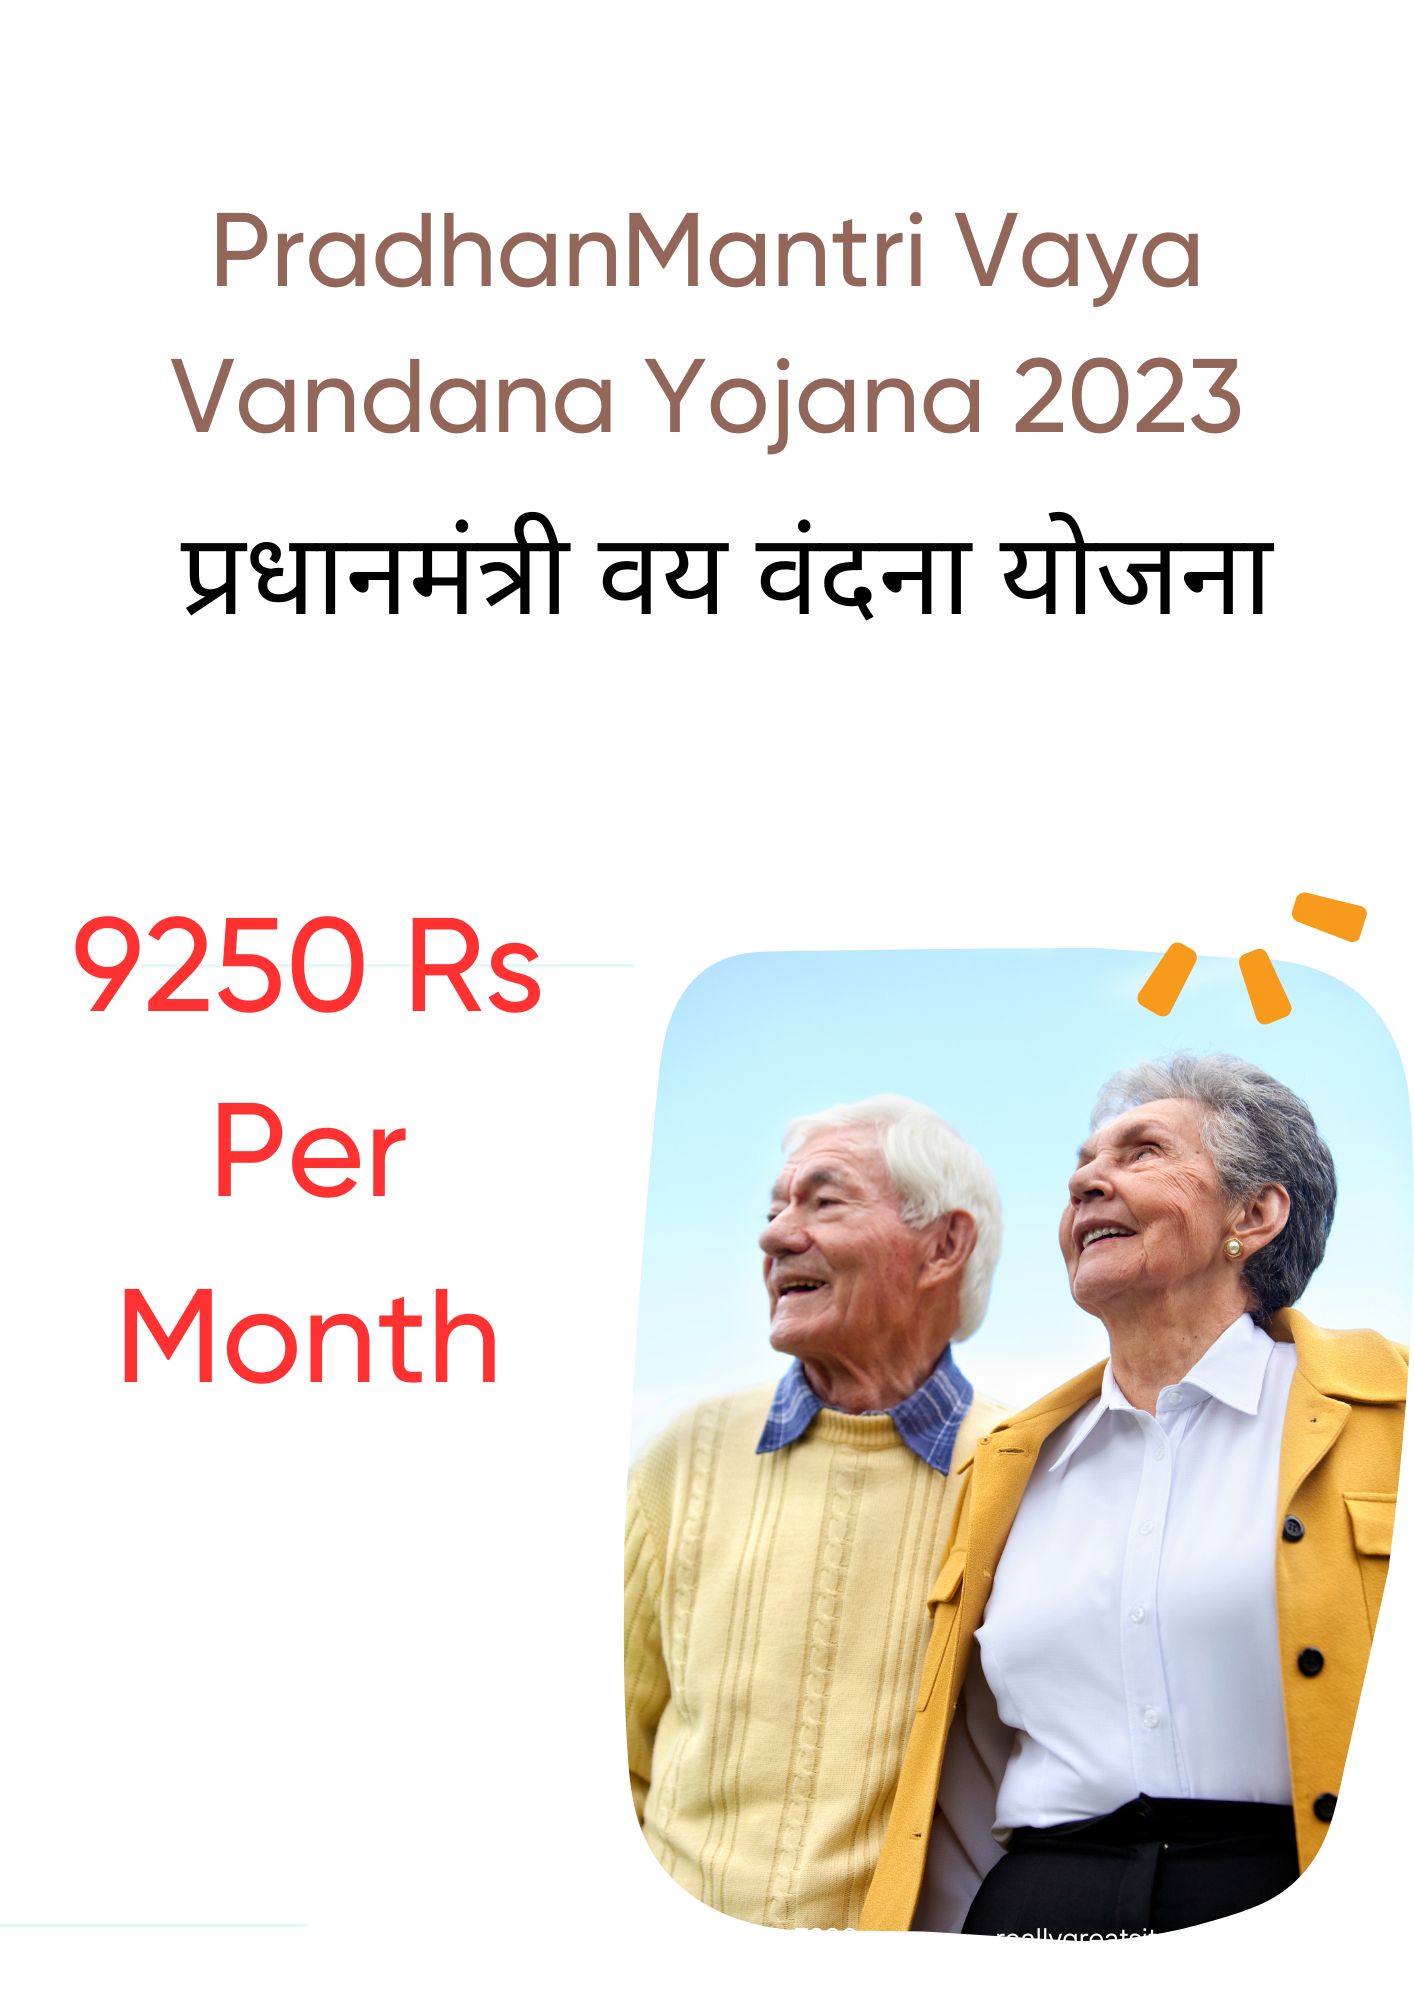 PradhanMantri Vaya Vandana Yojana 2023